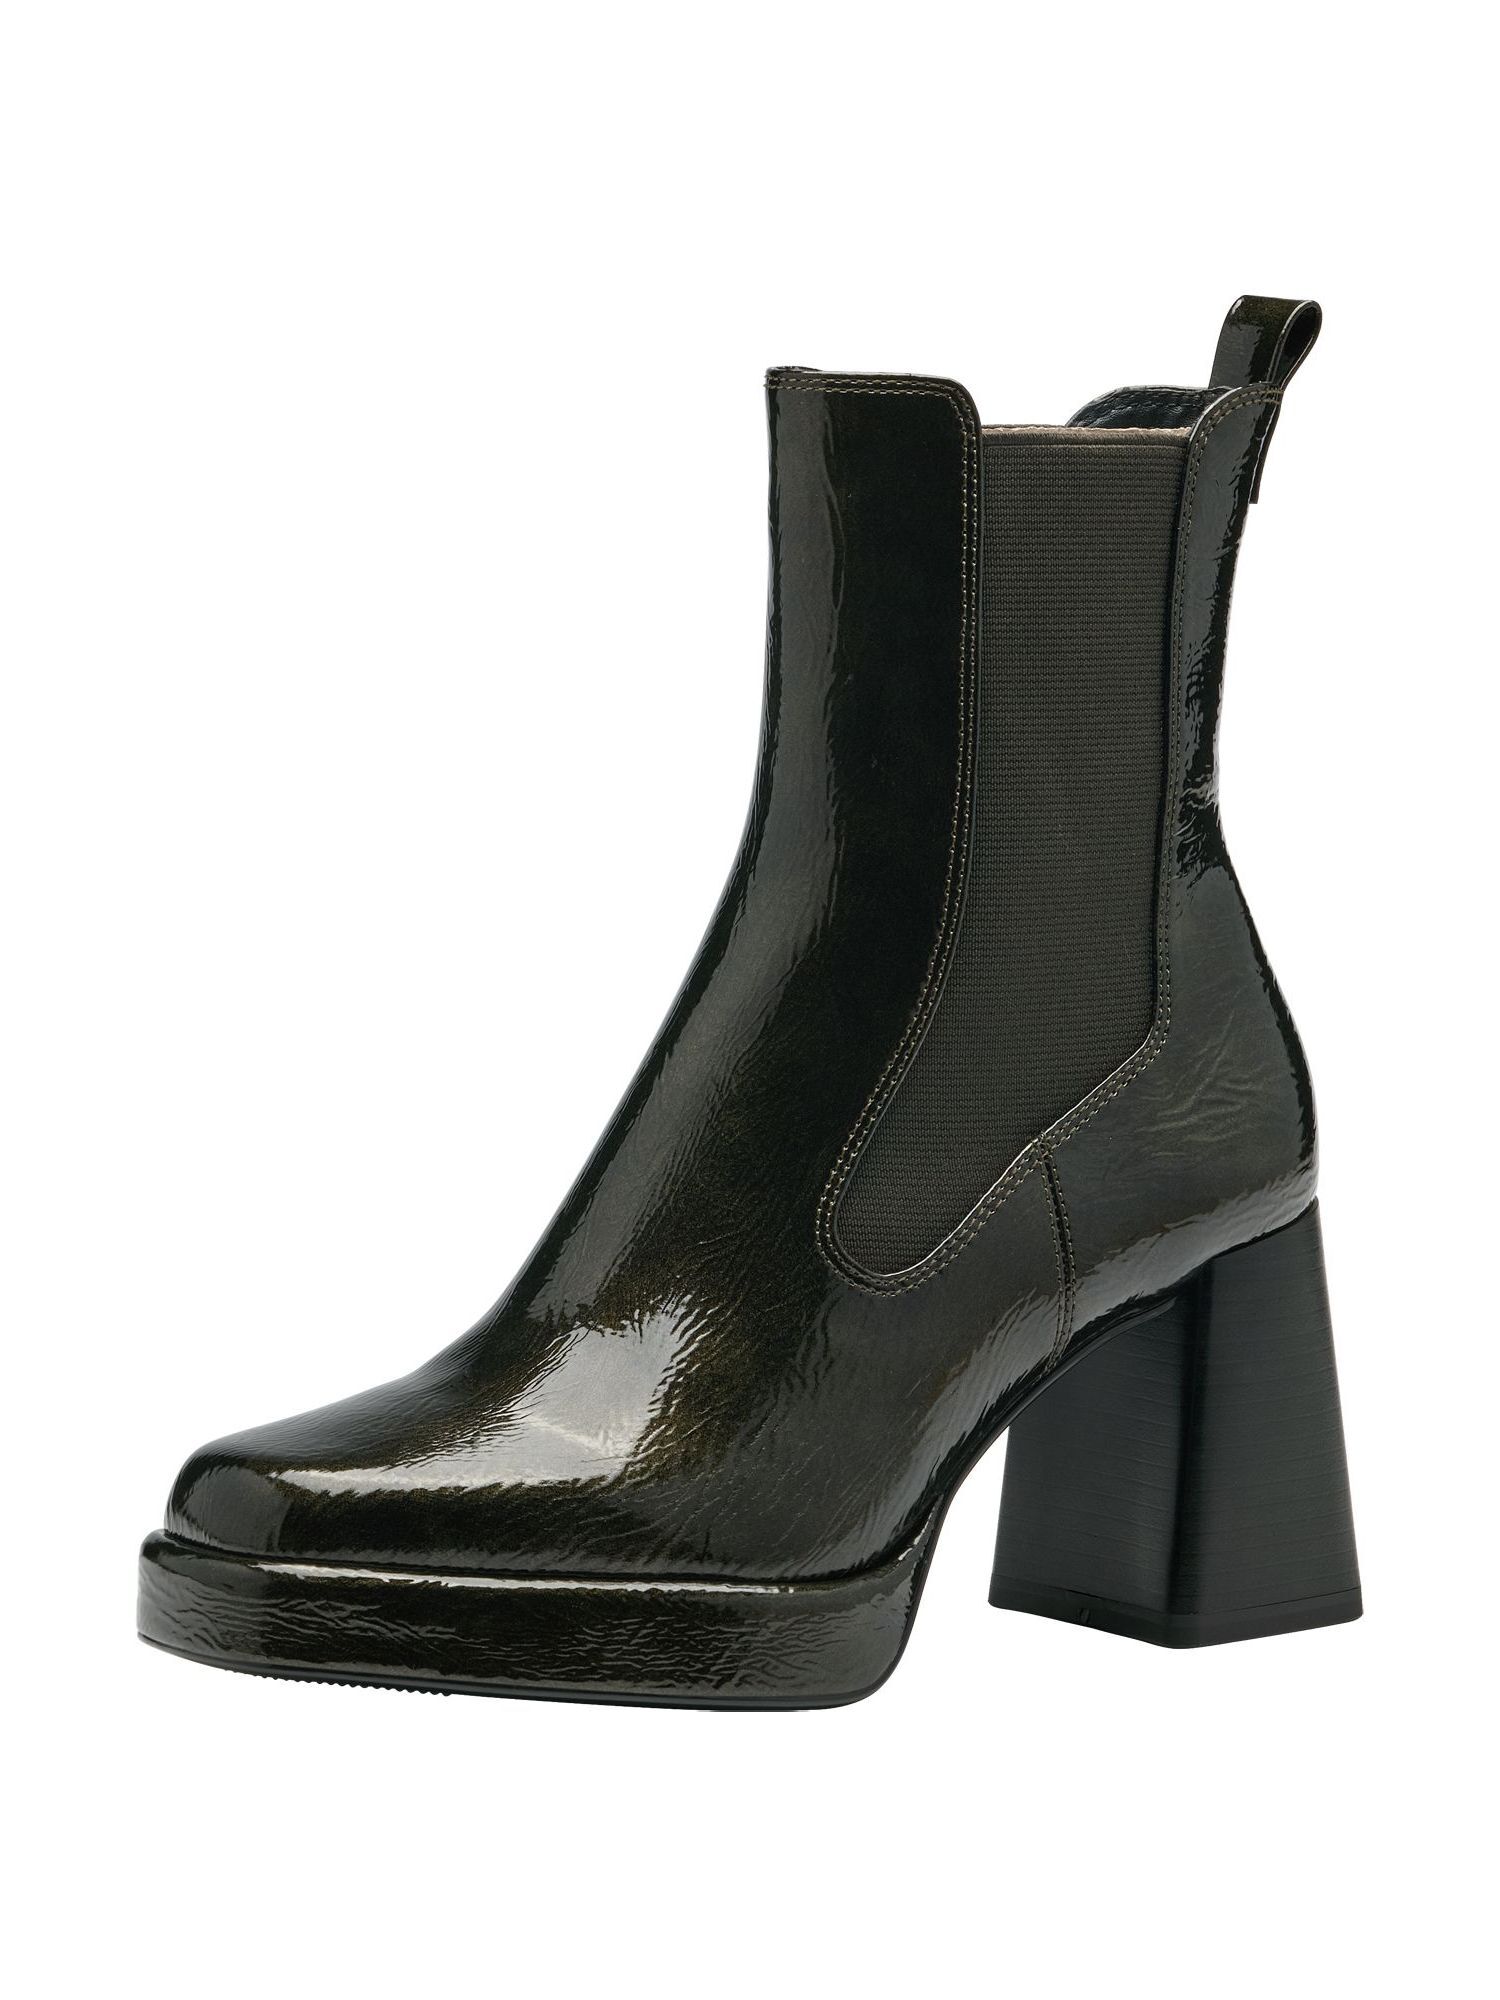 Ботинки Tamaris Chelsea Boot, оливковый ботинки женские tamaris оливковый 39